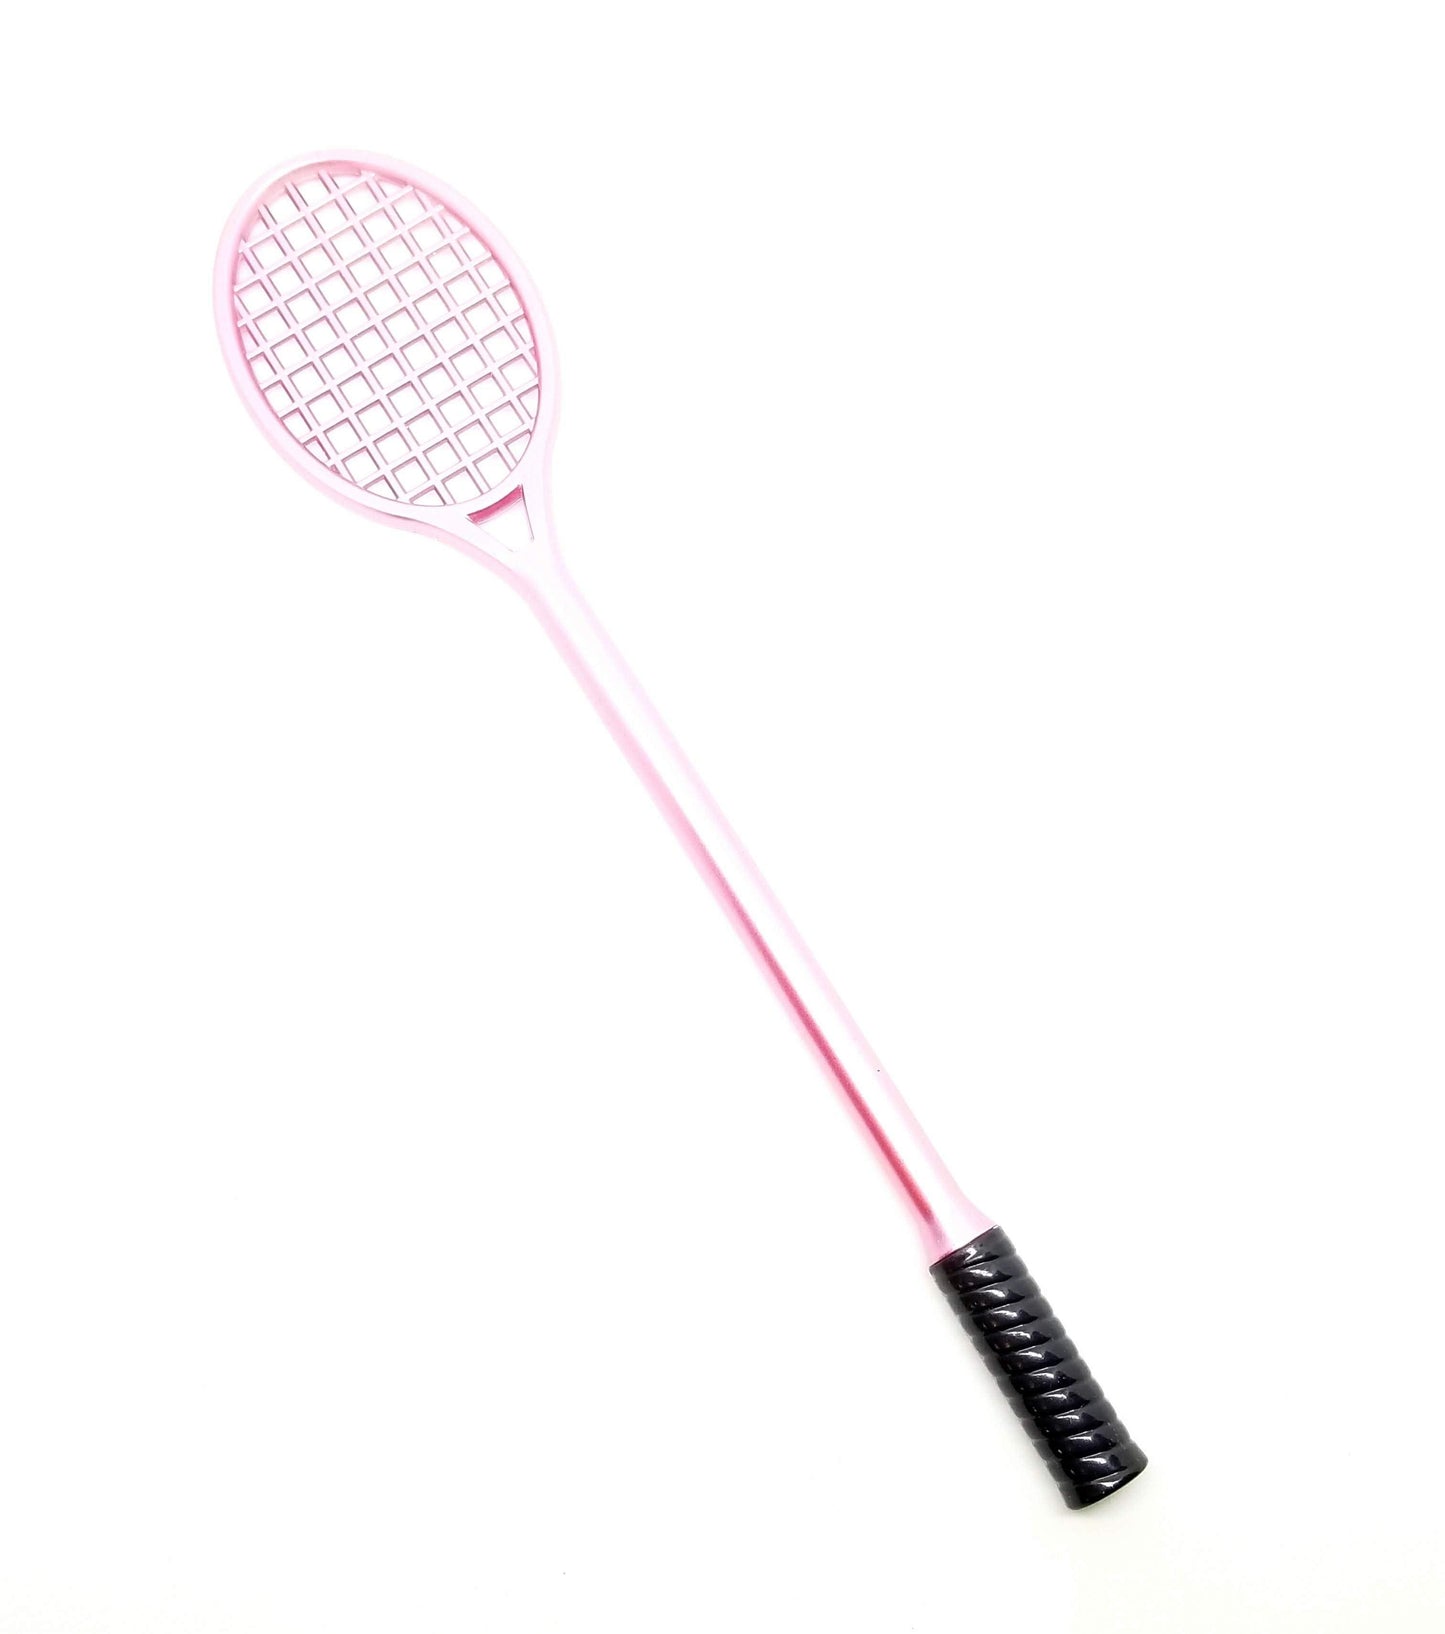 Slime Pressing Tennis Racket Pink Slime tool by Hoshimi Slimes | Hoshimi Slimes LLC